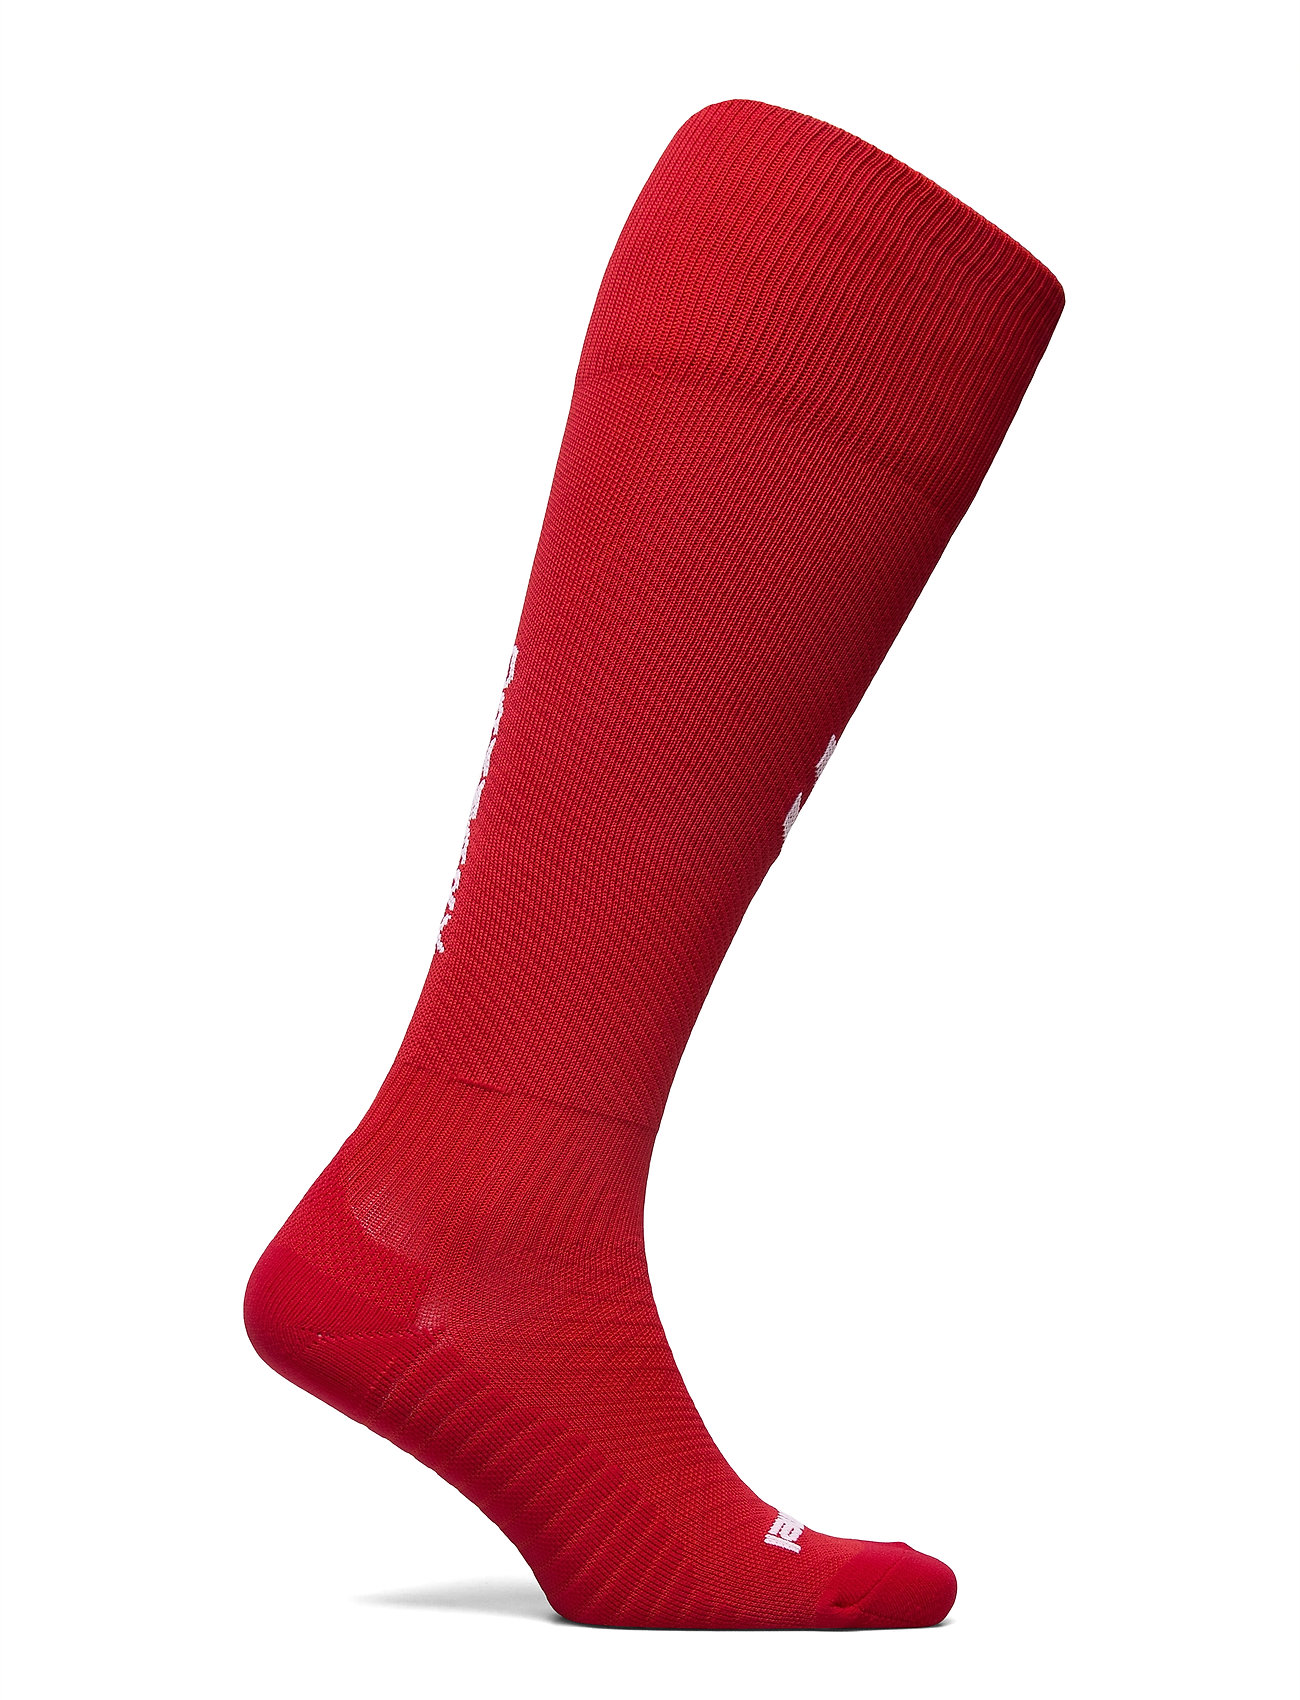 Urimelig notifikation spørge Dbu 20/21 Football Sock Underwear Socks Football Socks Rød Hummel strømper  fra Hummel til herre i Sort - Pashion.dk